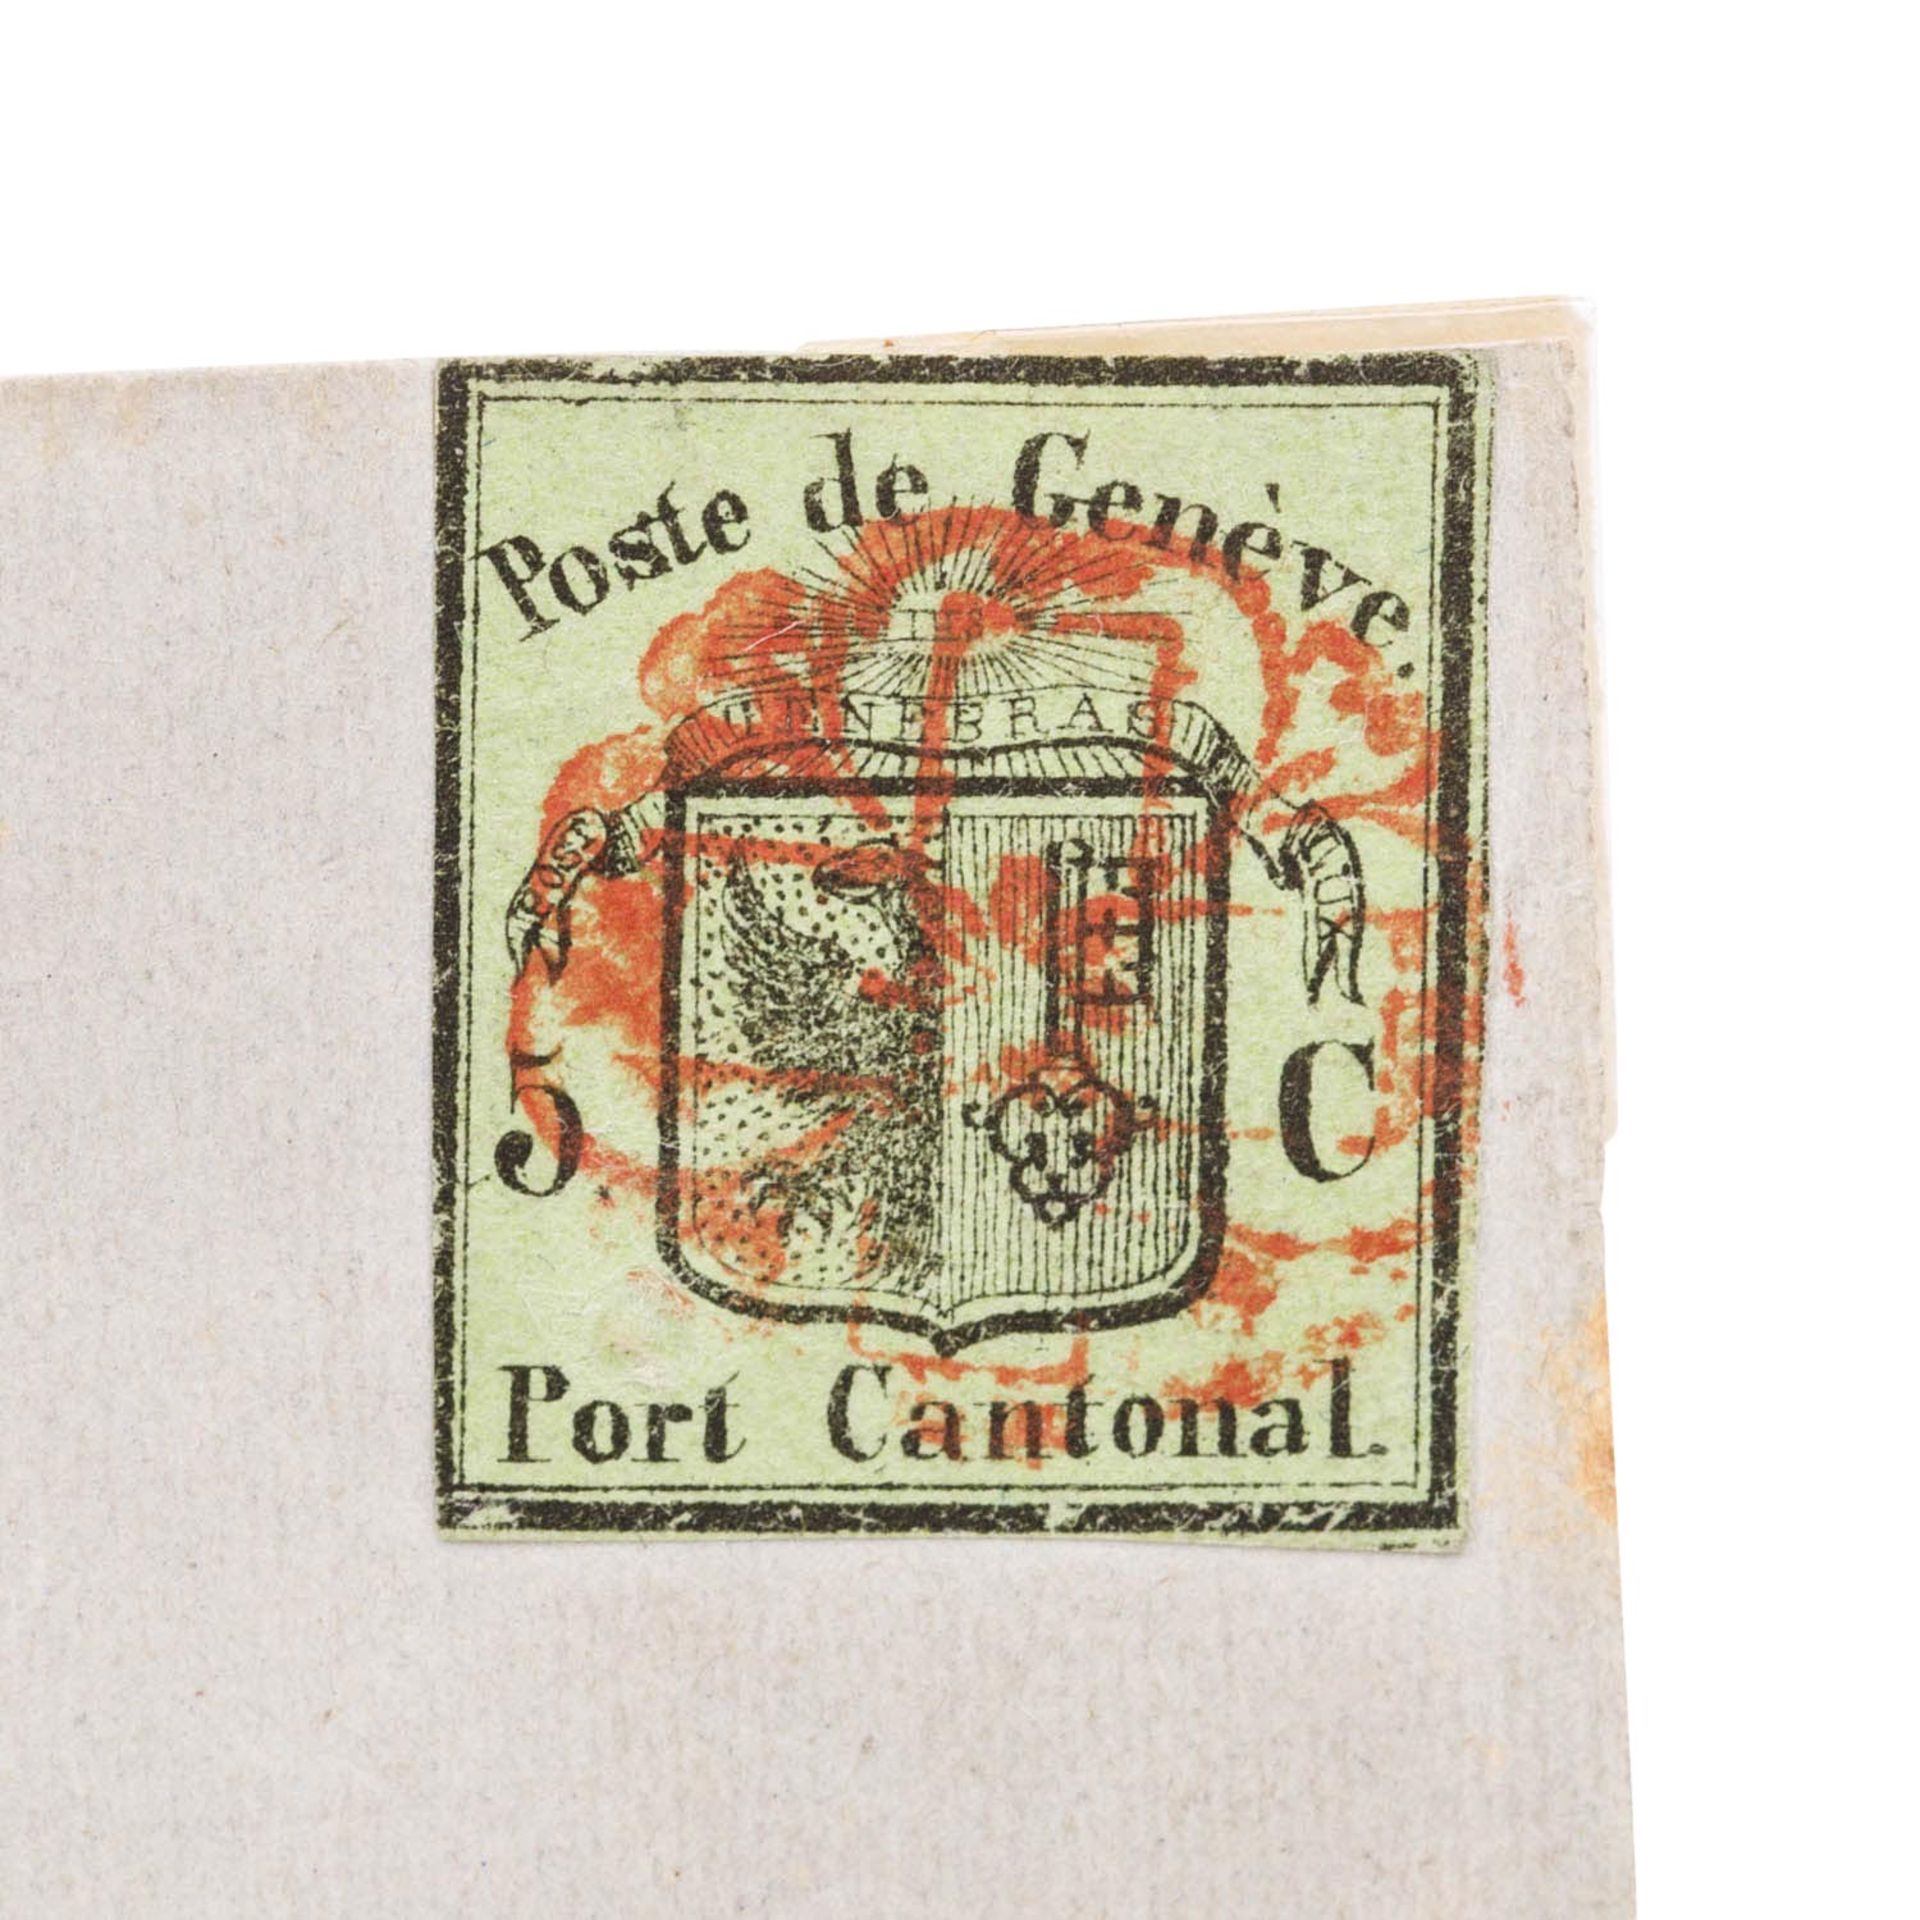 Schweiz, Kanton Genf - 1845, 5 Centimes schwarz auf gelbgrün, kleines Genfer Wappen auf Faltbriefums - Bild 2 aus 3